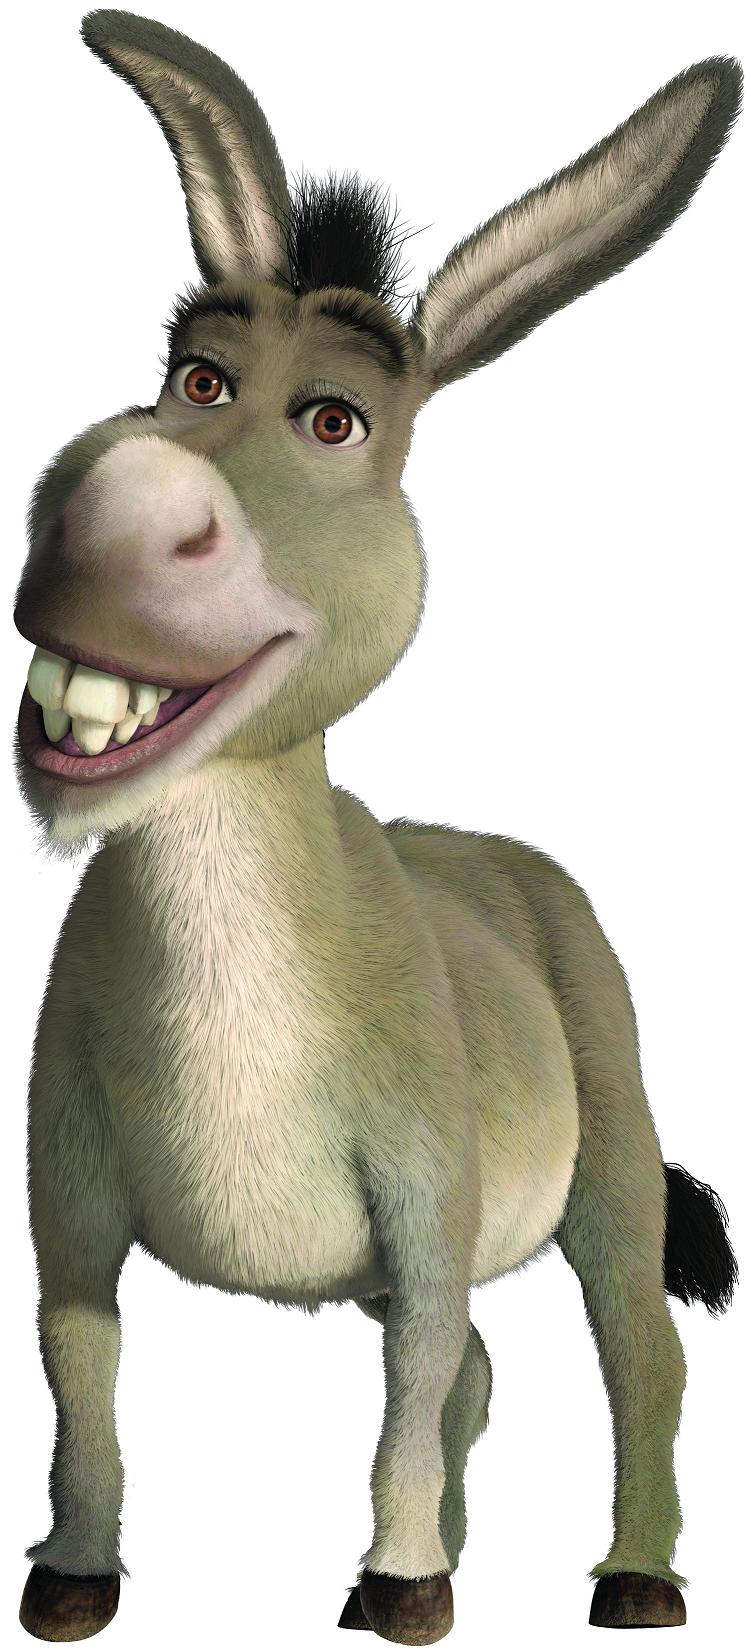 Donkey (Shrek)